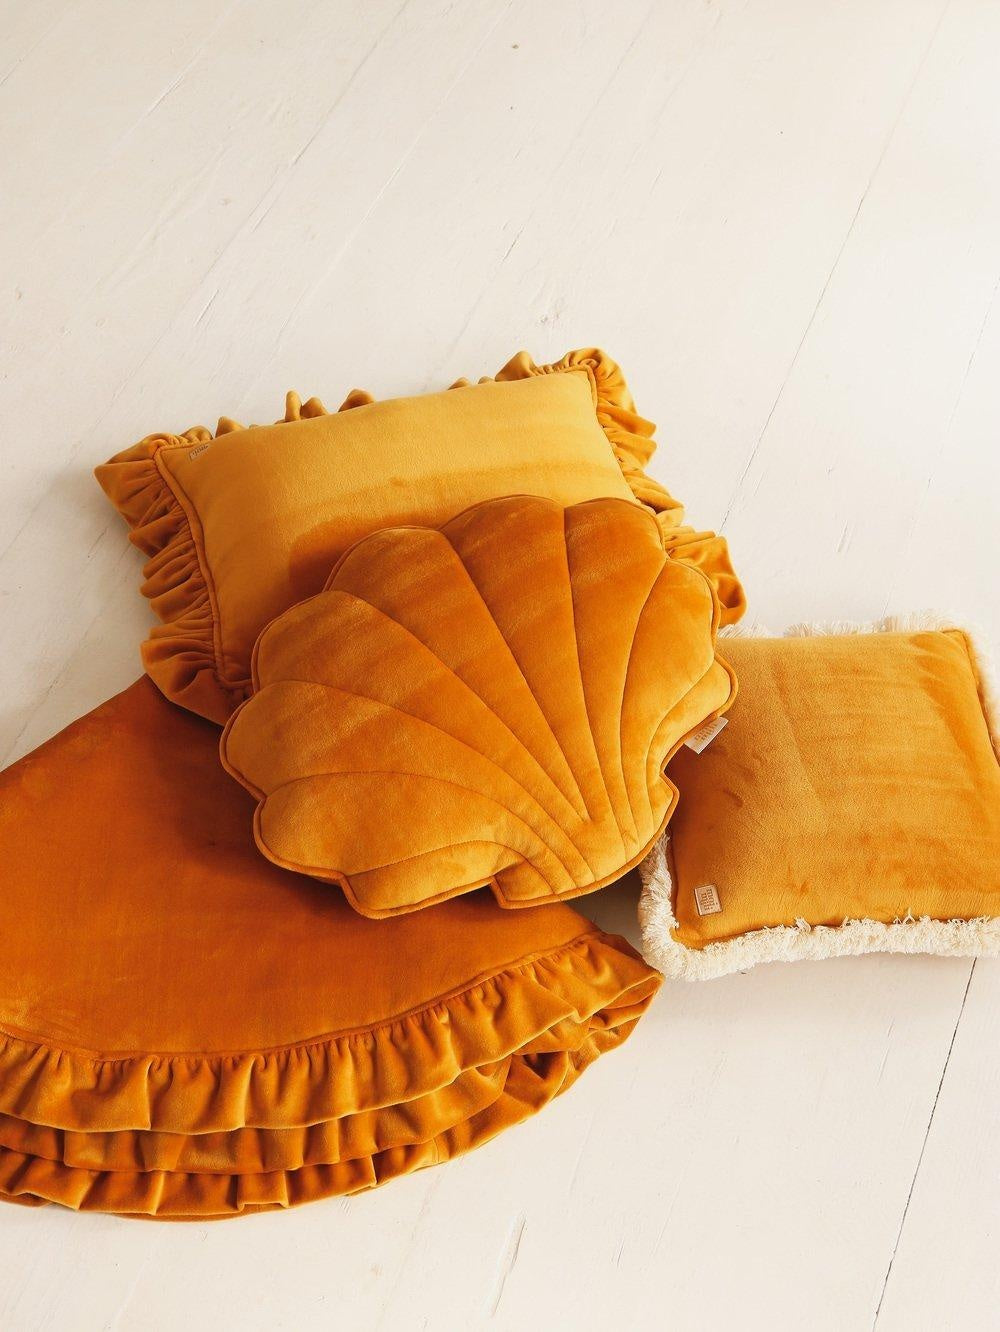 Shell Pillow Soft Velvet "Mustard" | Kids Room & Nursery Decor